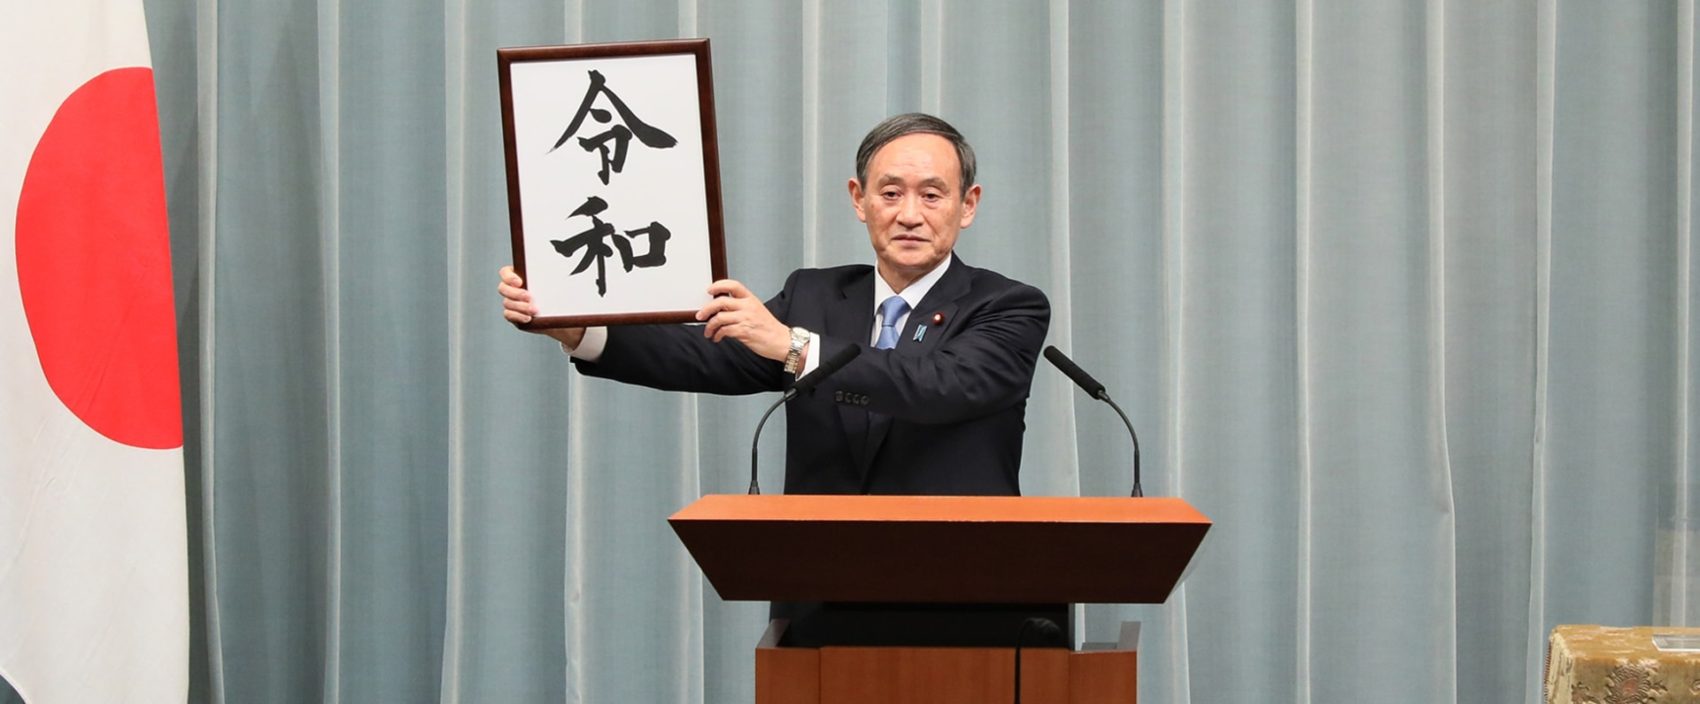 YoshihiaYoshihide Suga kündigt neue Kaiserzeit Reiwa ande Suga announcing new imperial era Reiwa